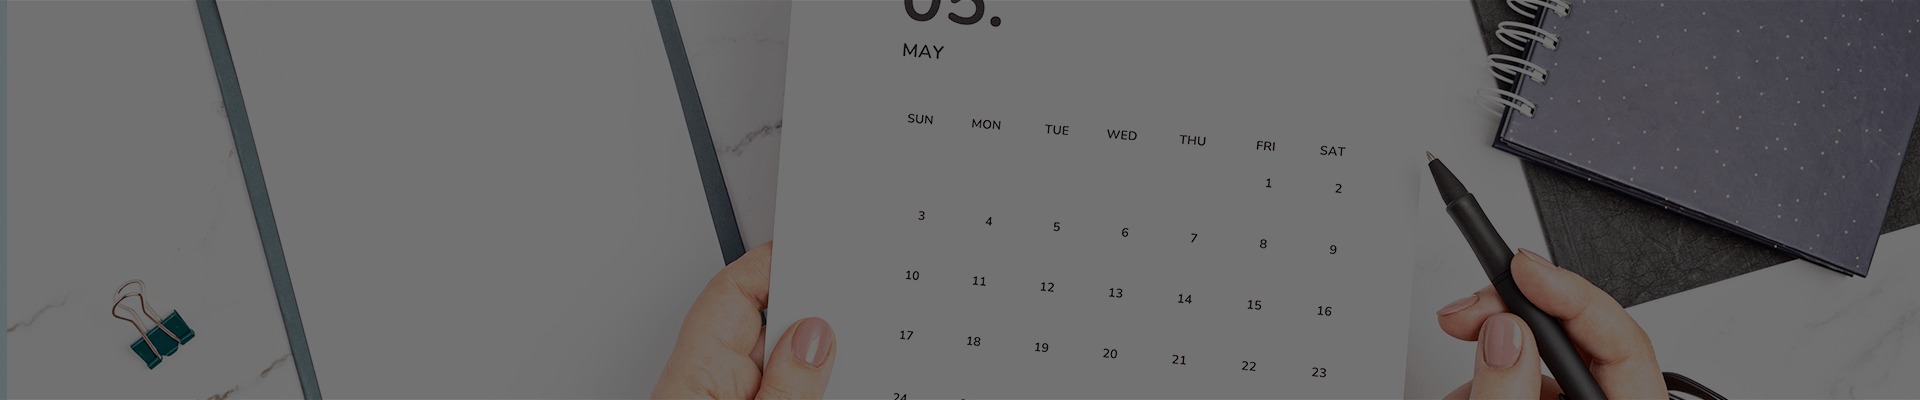 Un Calendario, un bolígrafo y un documento